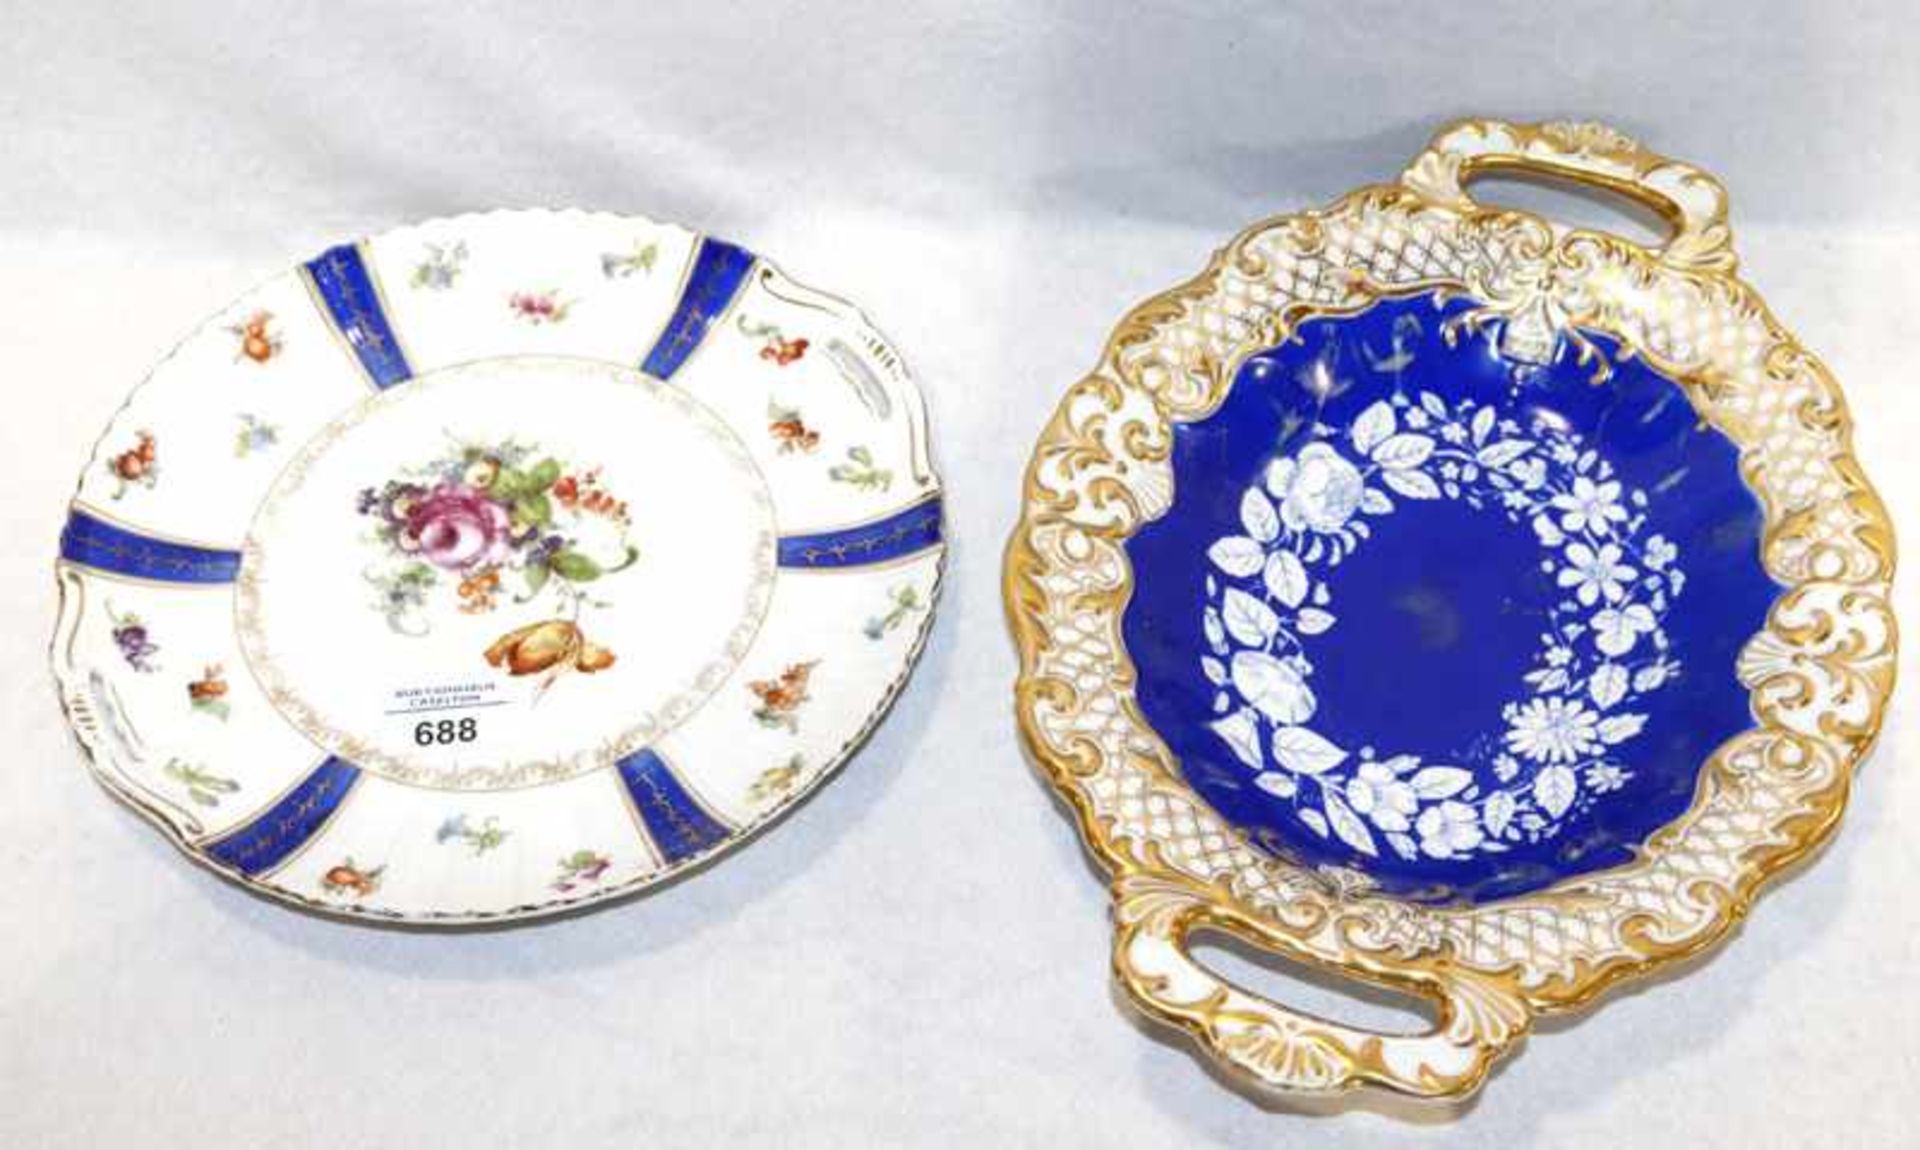 Porzellan Henkelschale mit blau/goldenem Dekor, Reliefrand, H 4 cm, B 35 cm, T 25 cm, und